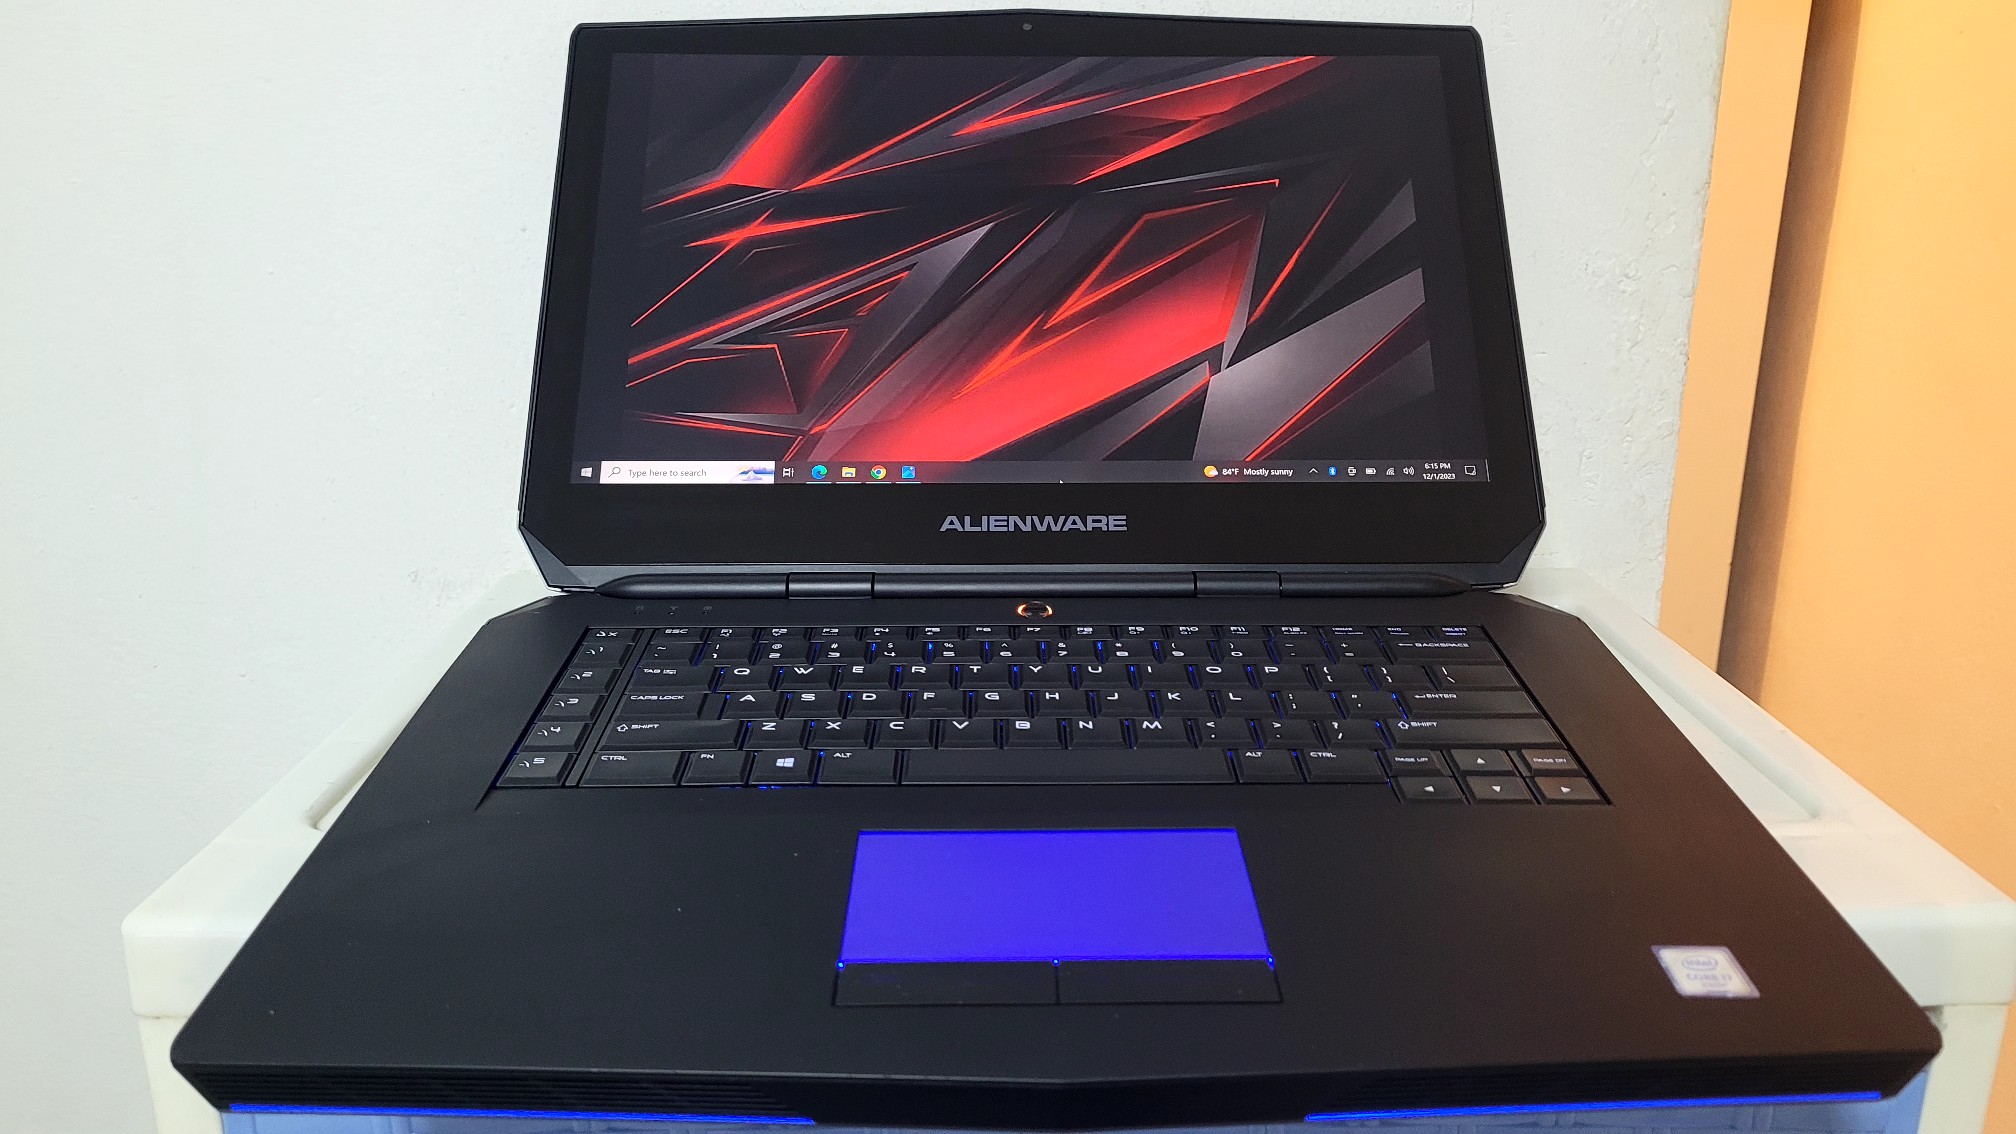 computadoras y laptops - Alienware R2 17 Pulg Core i7 Ram 16gb ddrr Disco 1tb Gtx 970m 10gb 0